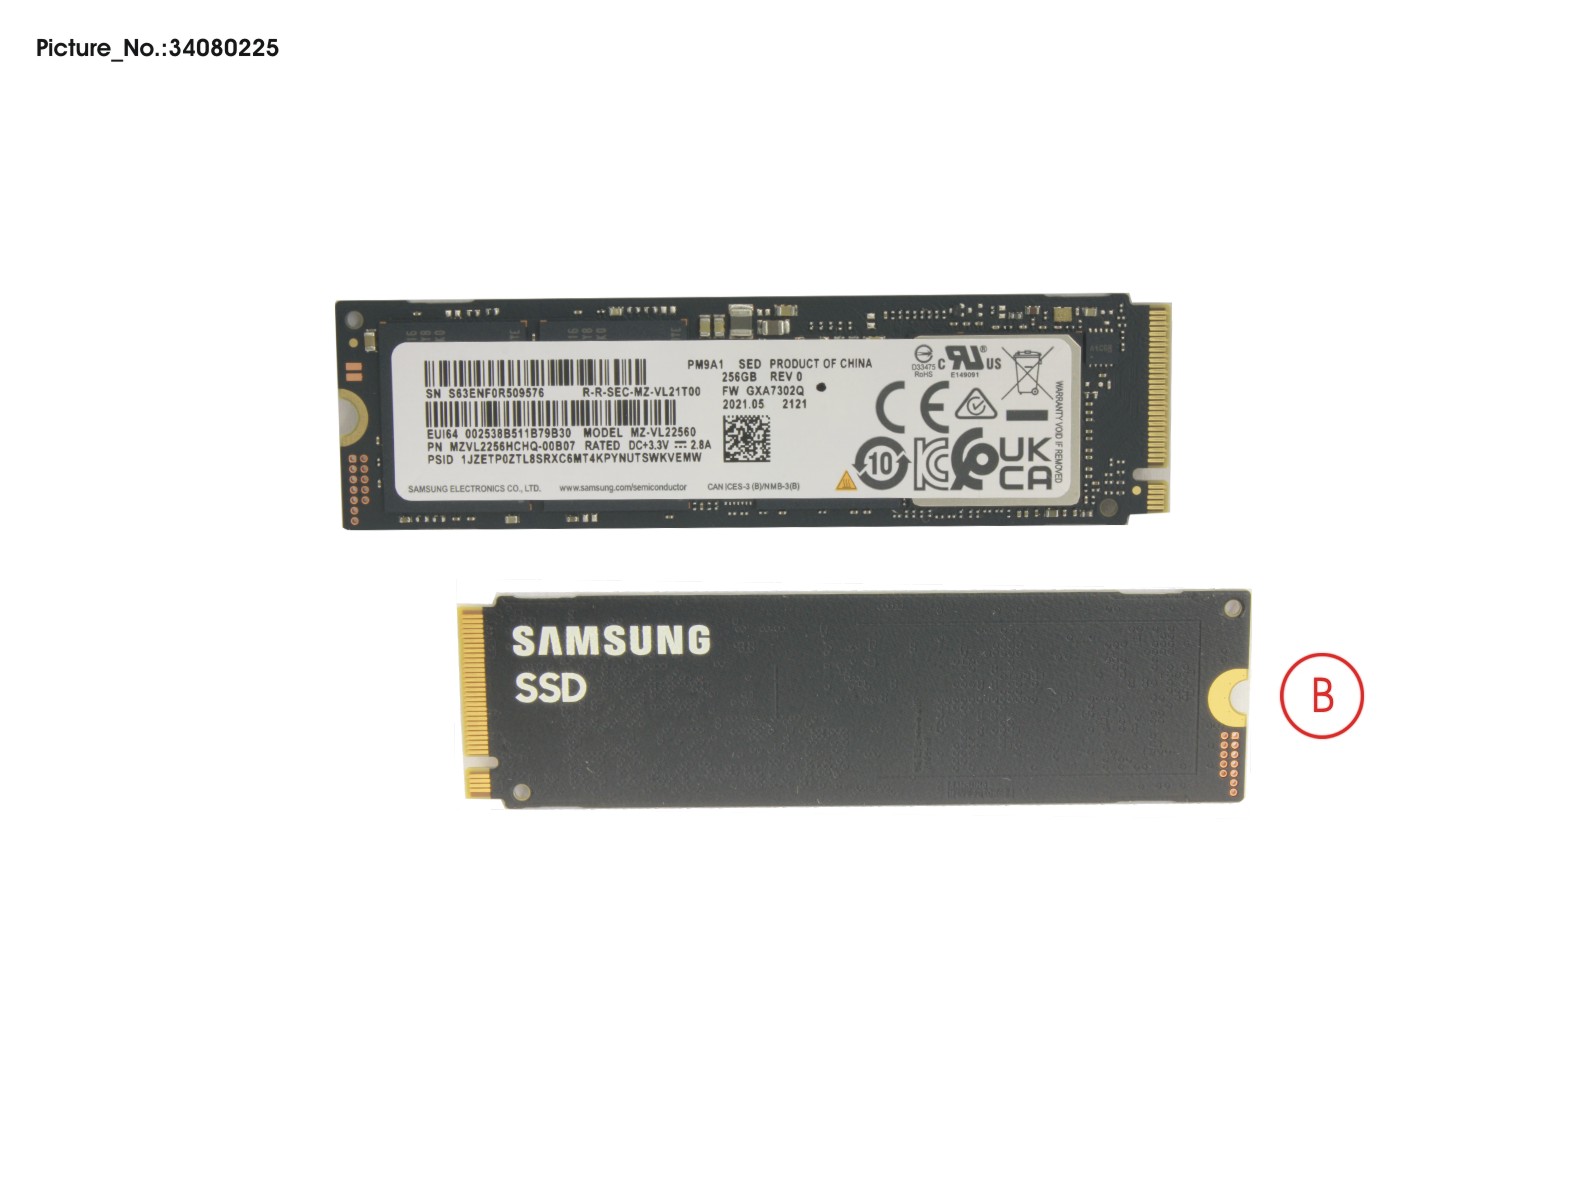 SSD PCIE M.2 PM9A1 G4 256GB(SED)